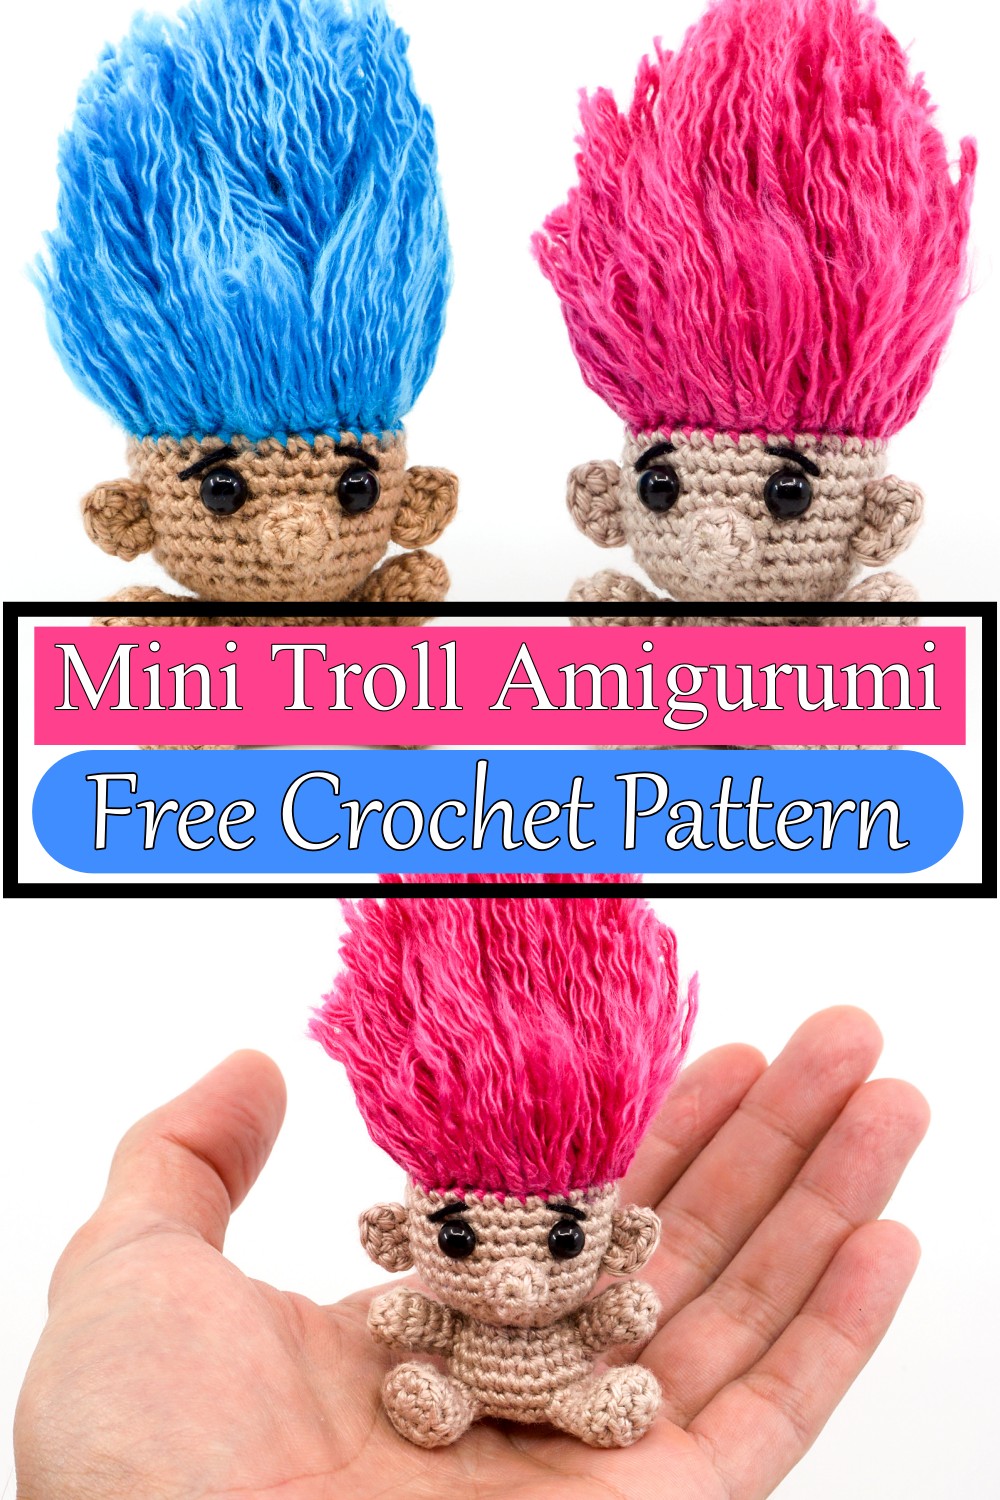 Mini Troll Amigurumi